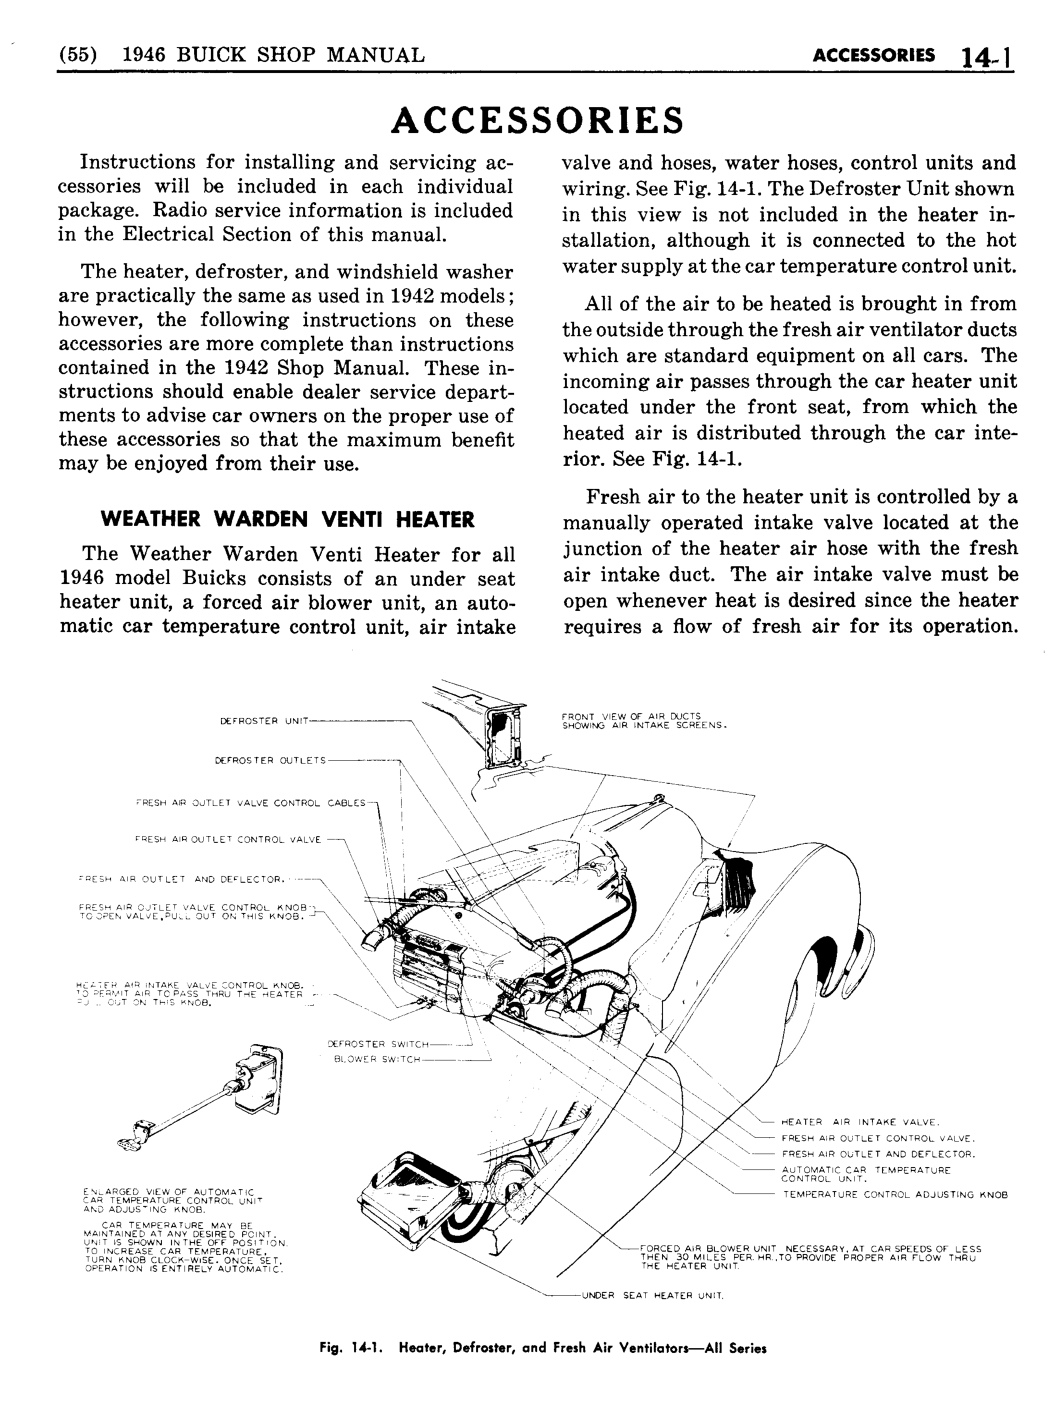 n_13 1946 Buick Shop Manual - Accessories-001-001.jpg